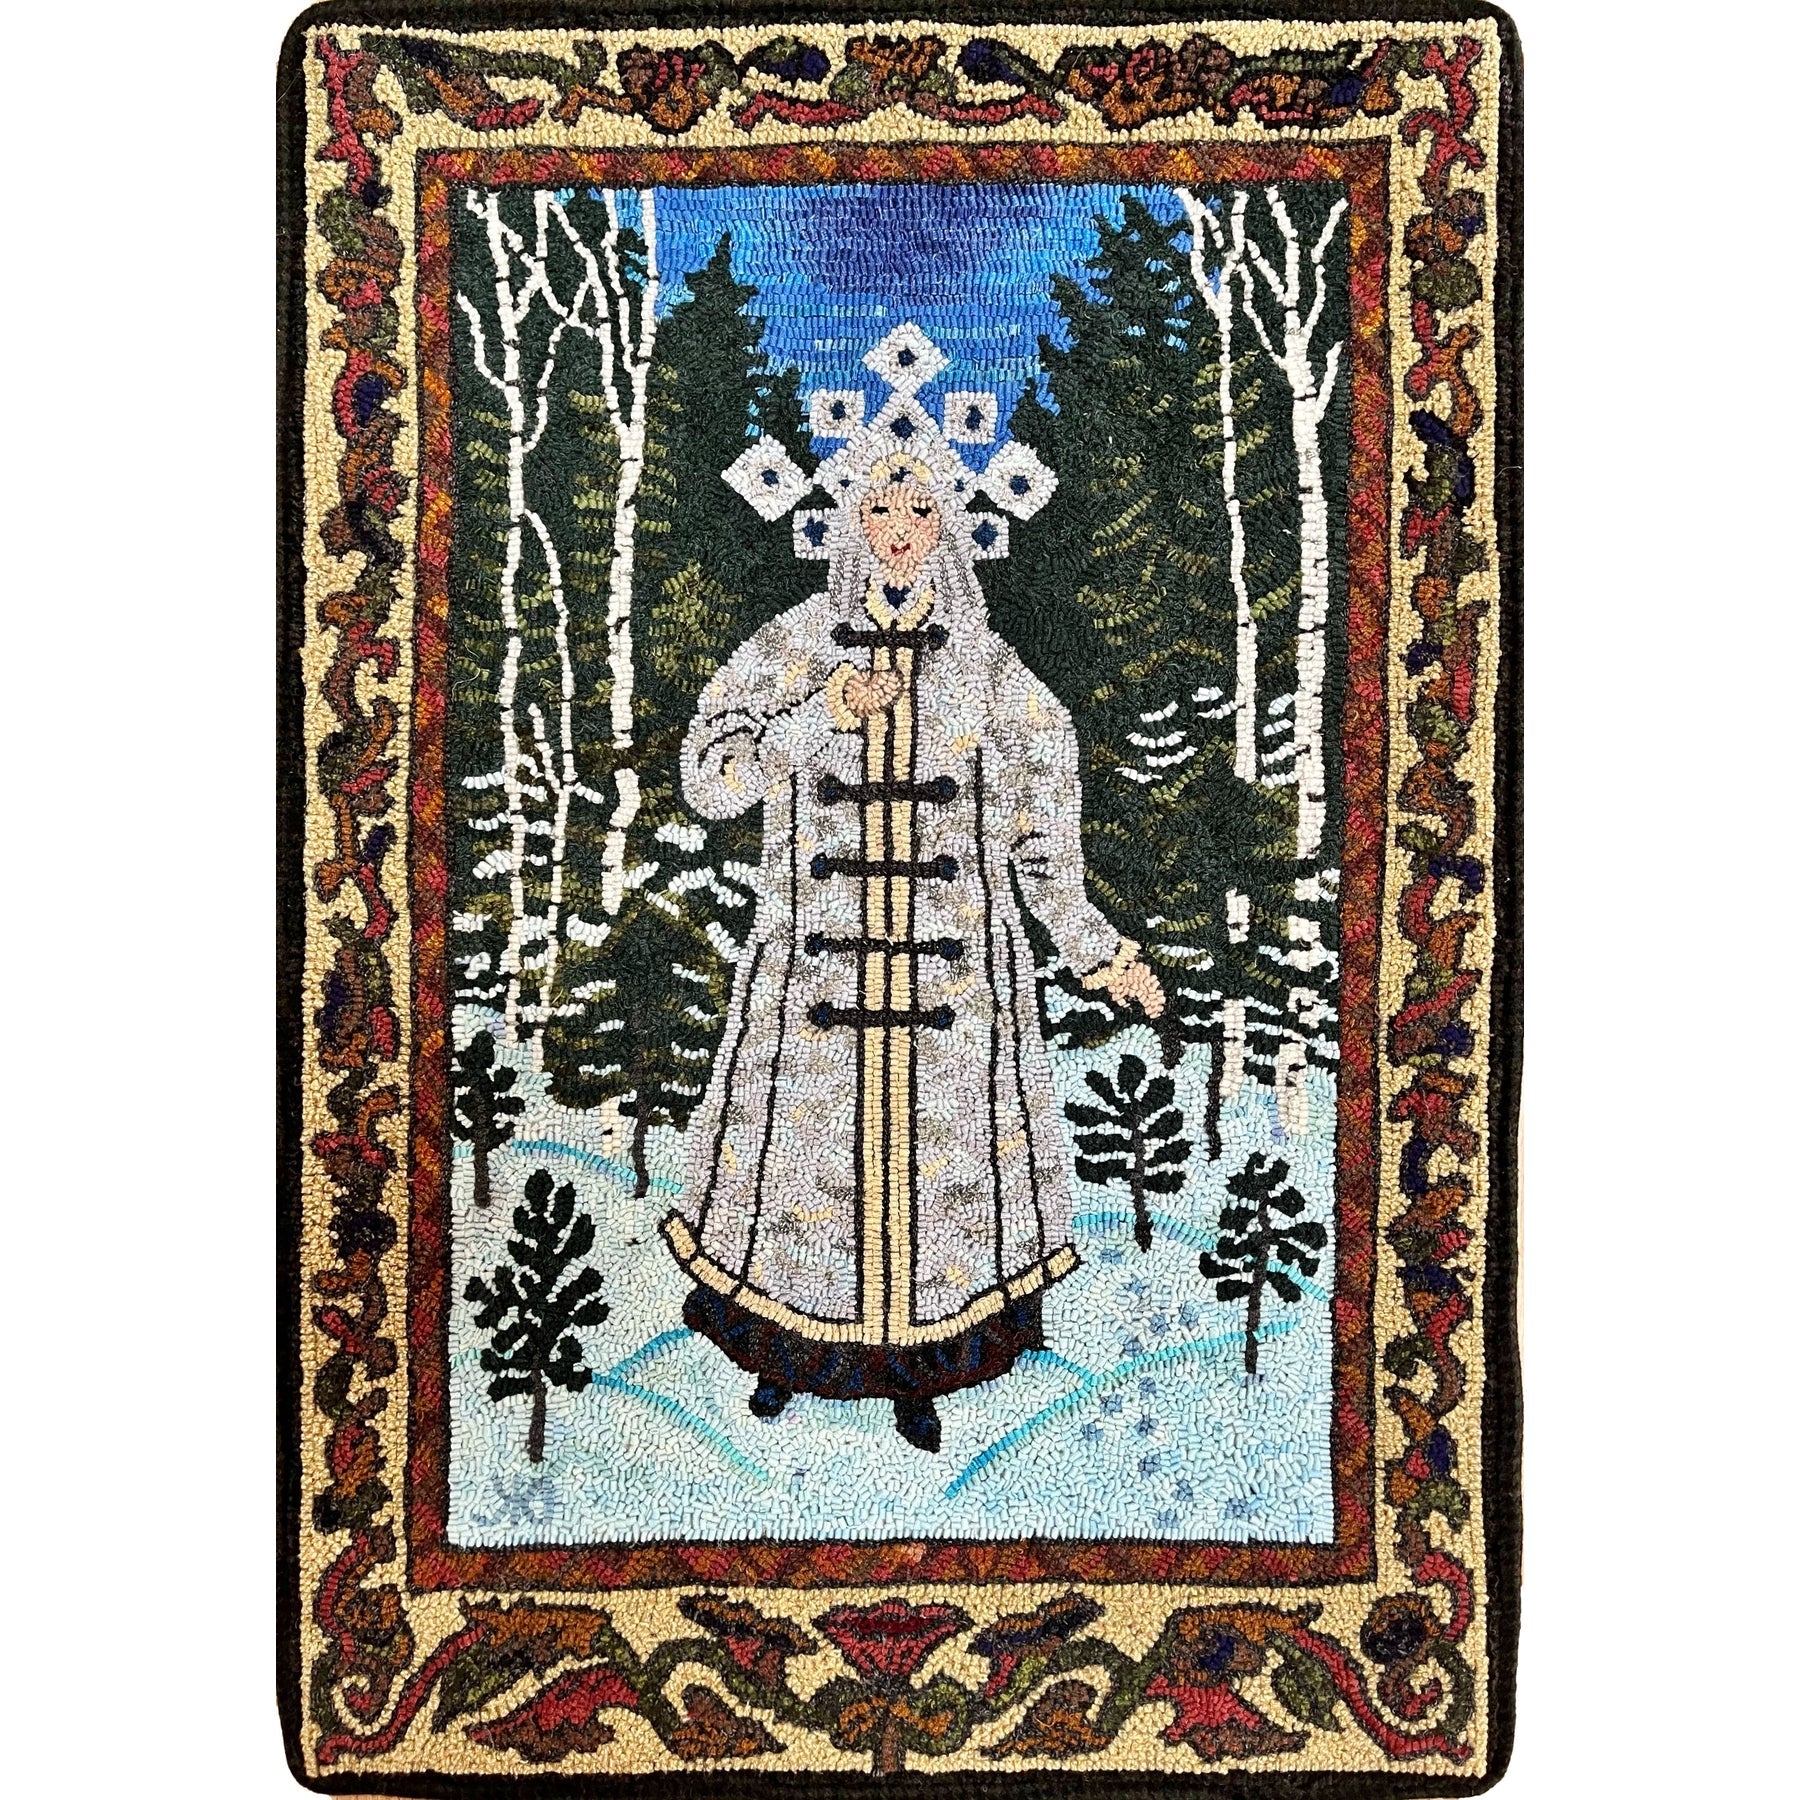 The Snow Maiden. Ill. Boris Zvorykin, 1925., rug hooked by Dinah Kretschmer